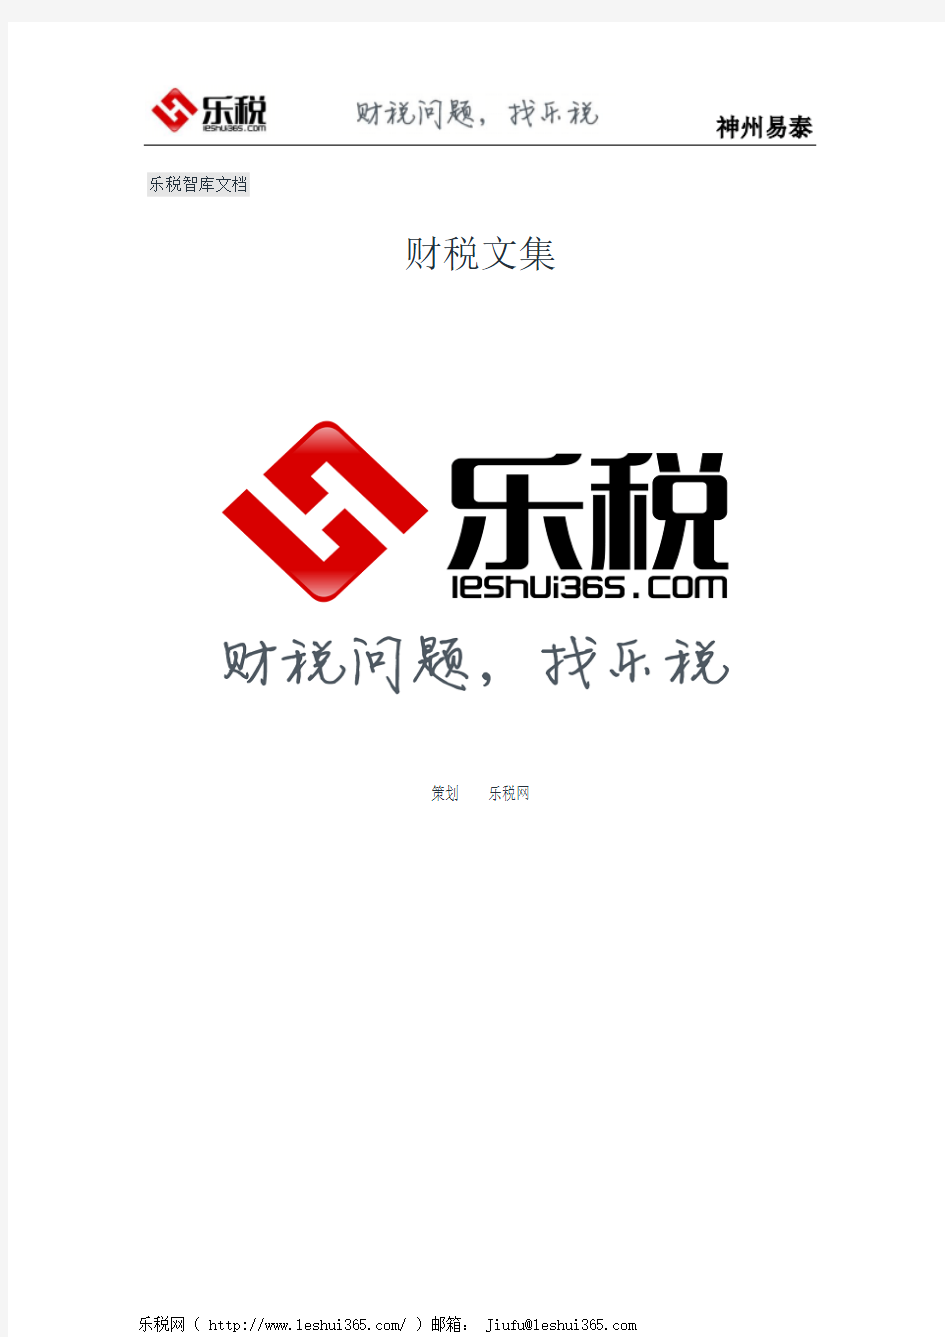 长沙市地方税务局金税三期个税全员全额扣缴明细申报宣传手册